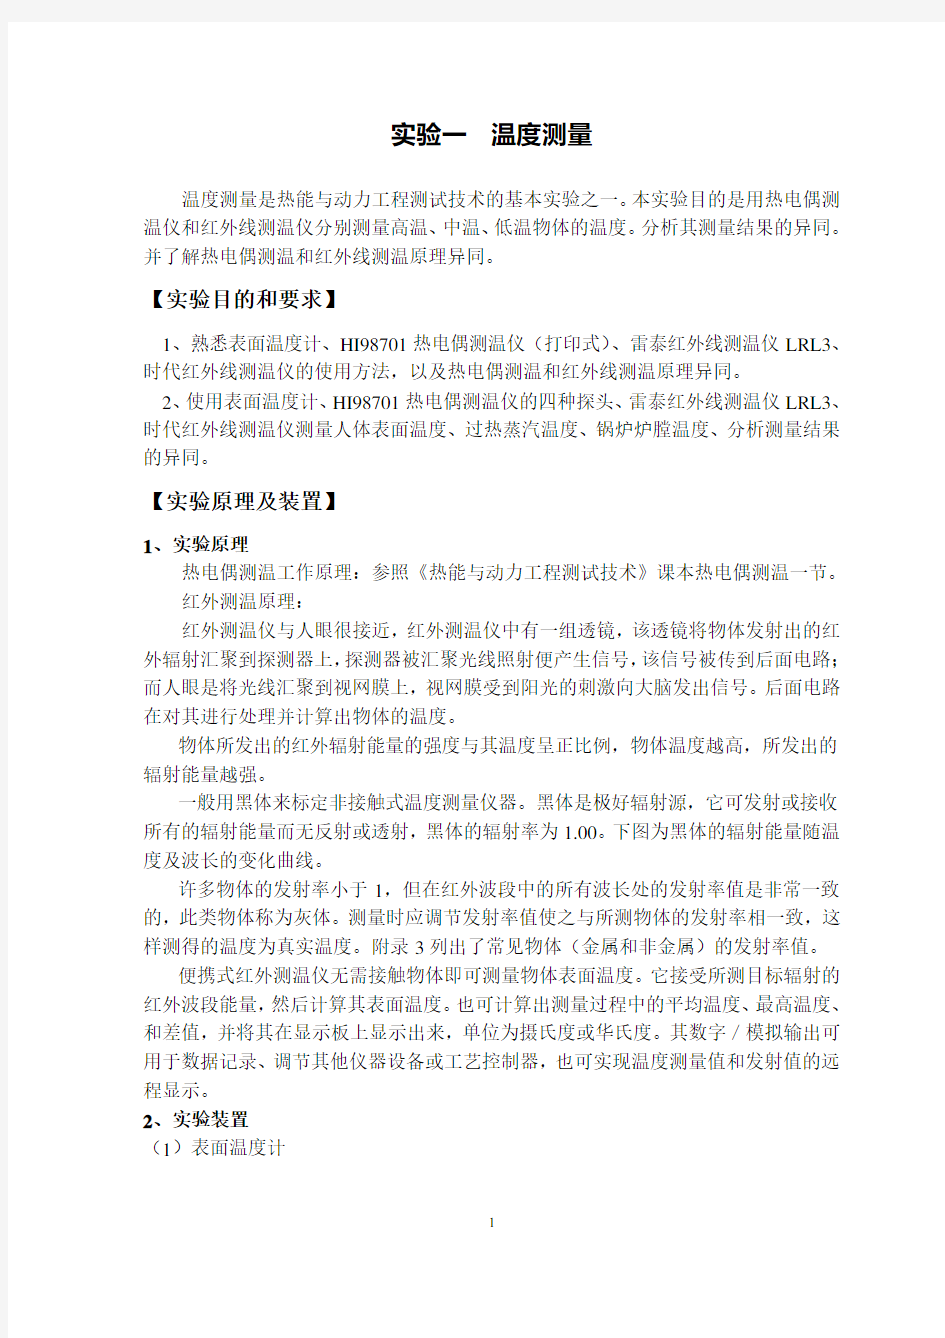 北京石油化工学院热能与动力工程专业实验指导书(第一版)